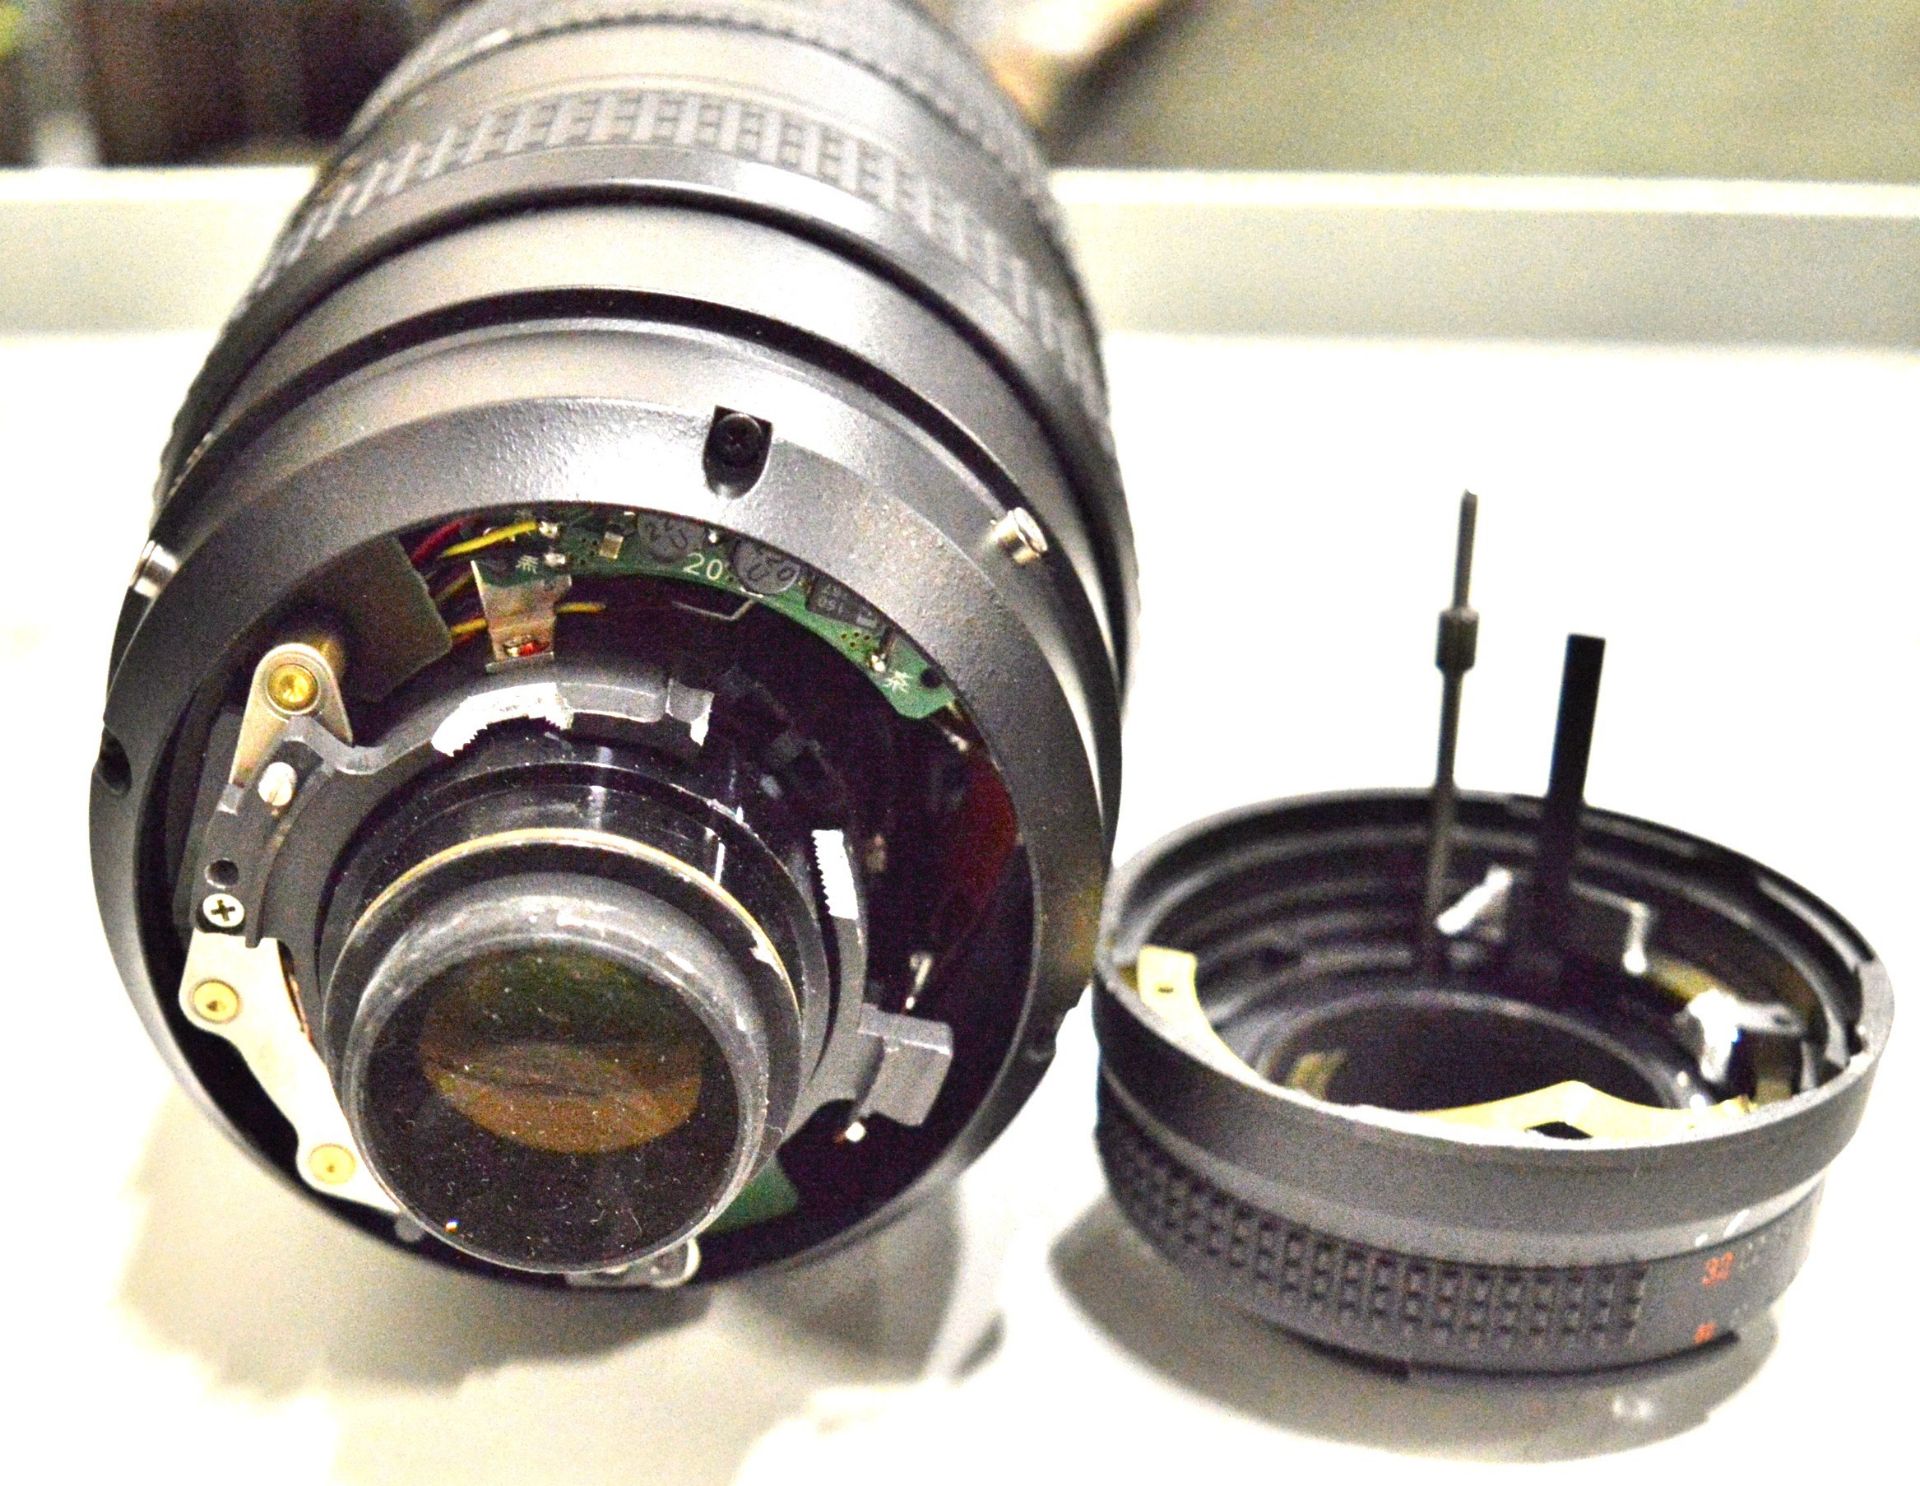 Nikon Lens AF-Nikkor 80-400mm 1:4.5-5.6D - Serial No. 412575. - Image 6 of 6